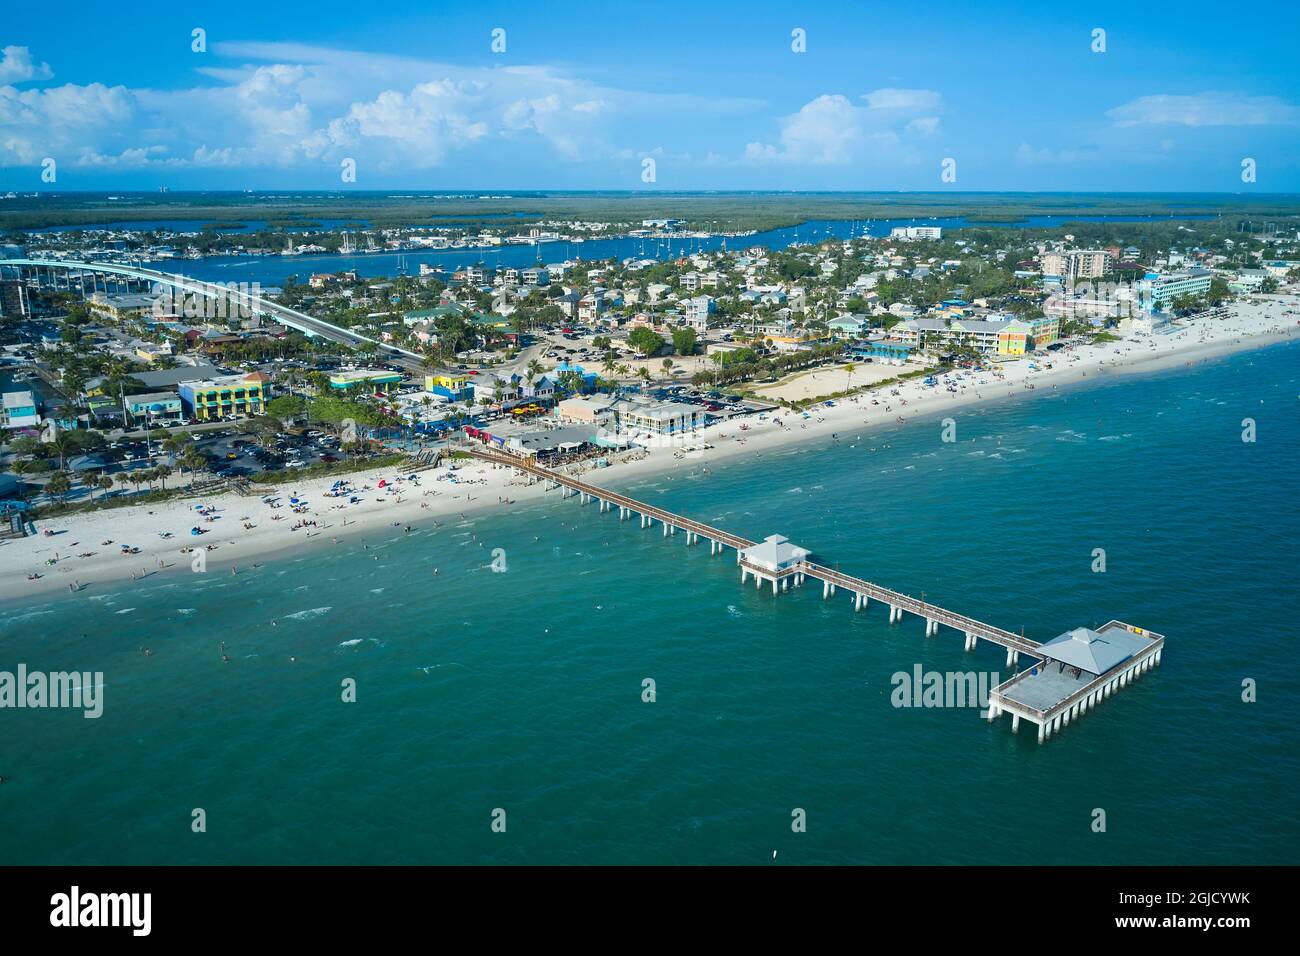 États-Unis, Floride, fort Myers Beach. Vue aérienne de la jetée de fort Myers. Situé sur l'île d'Estero, fort Myers Beach est une destination touristique importante à Flori Banque D'Images